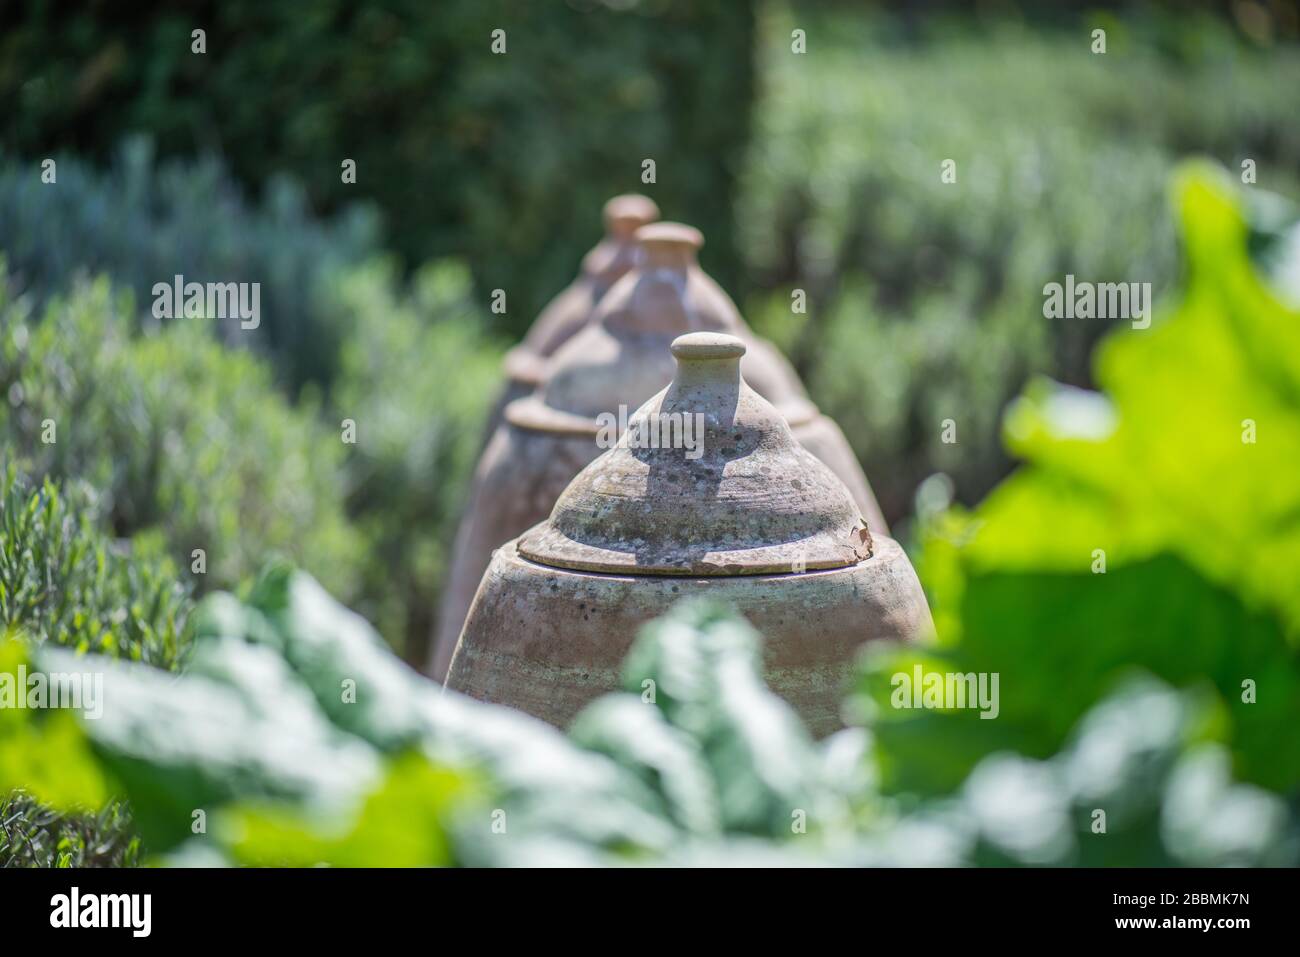 Giardino di campagna inglese. Vasi di forzatura della terracotta in un giardino del cottage. Towcester, Northamptonshire, Regno Unito Foto Stock